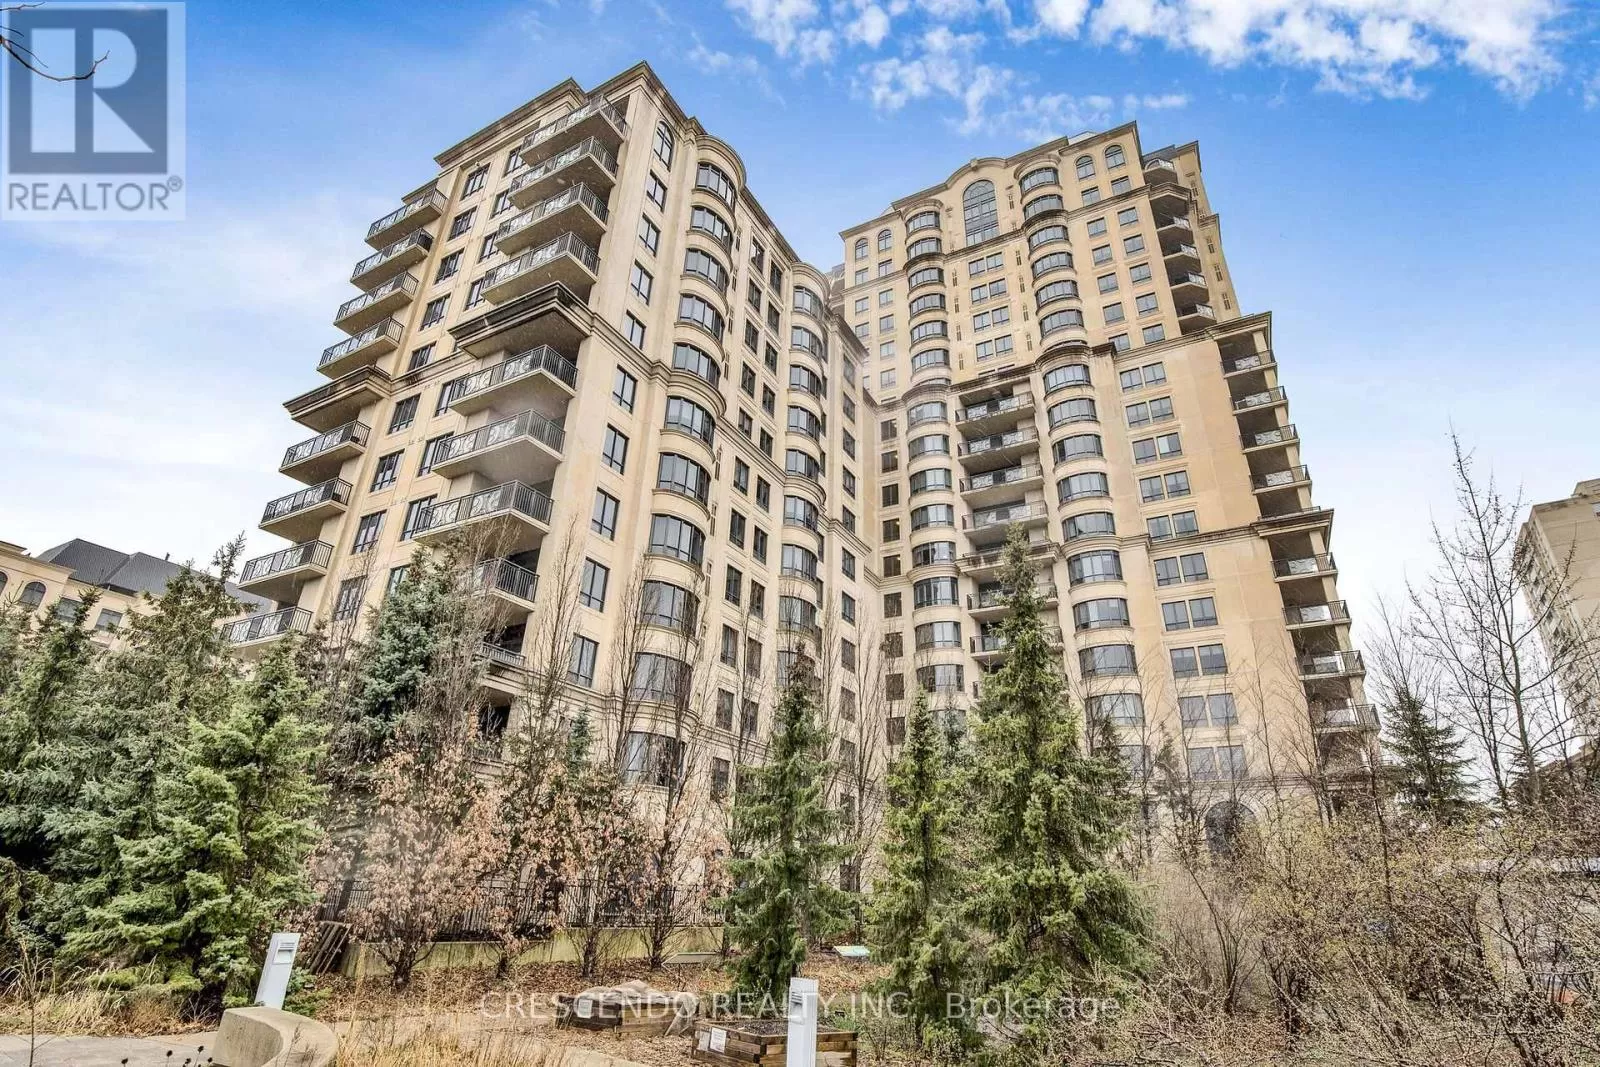 Apartment for rent: 704c - 662 Sheppard Avenue E, Toronto, Ontario M2K 3E6